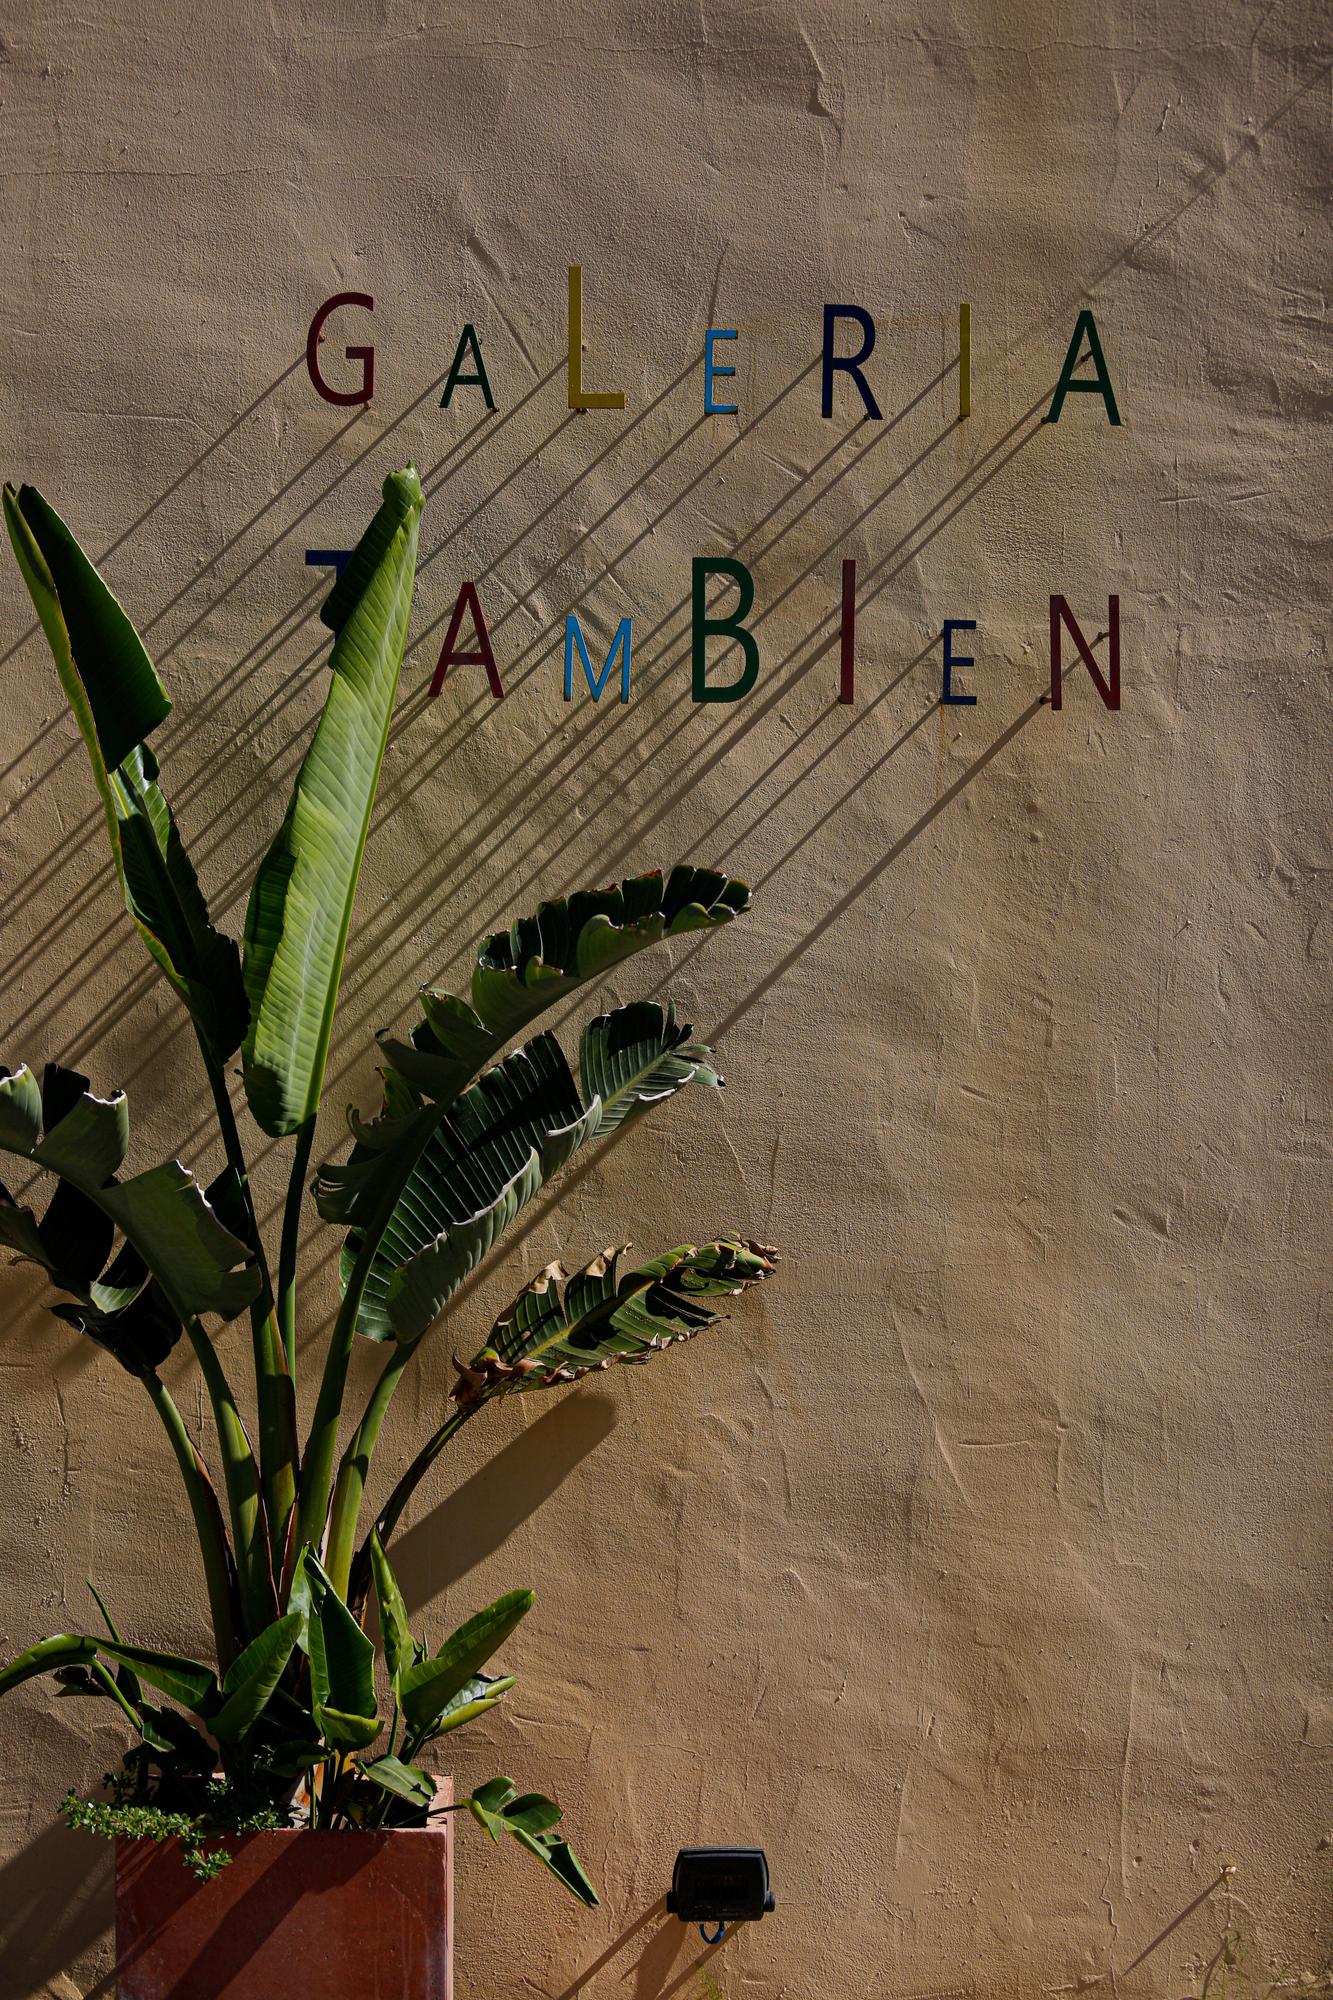 Una ventana en Ibiza al arte contemporáneo africano